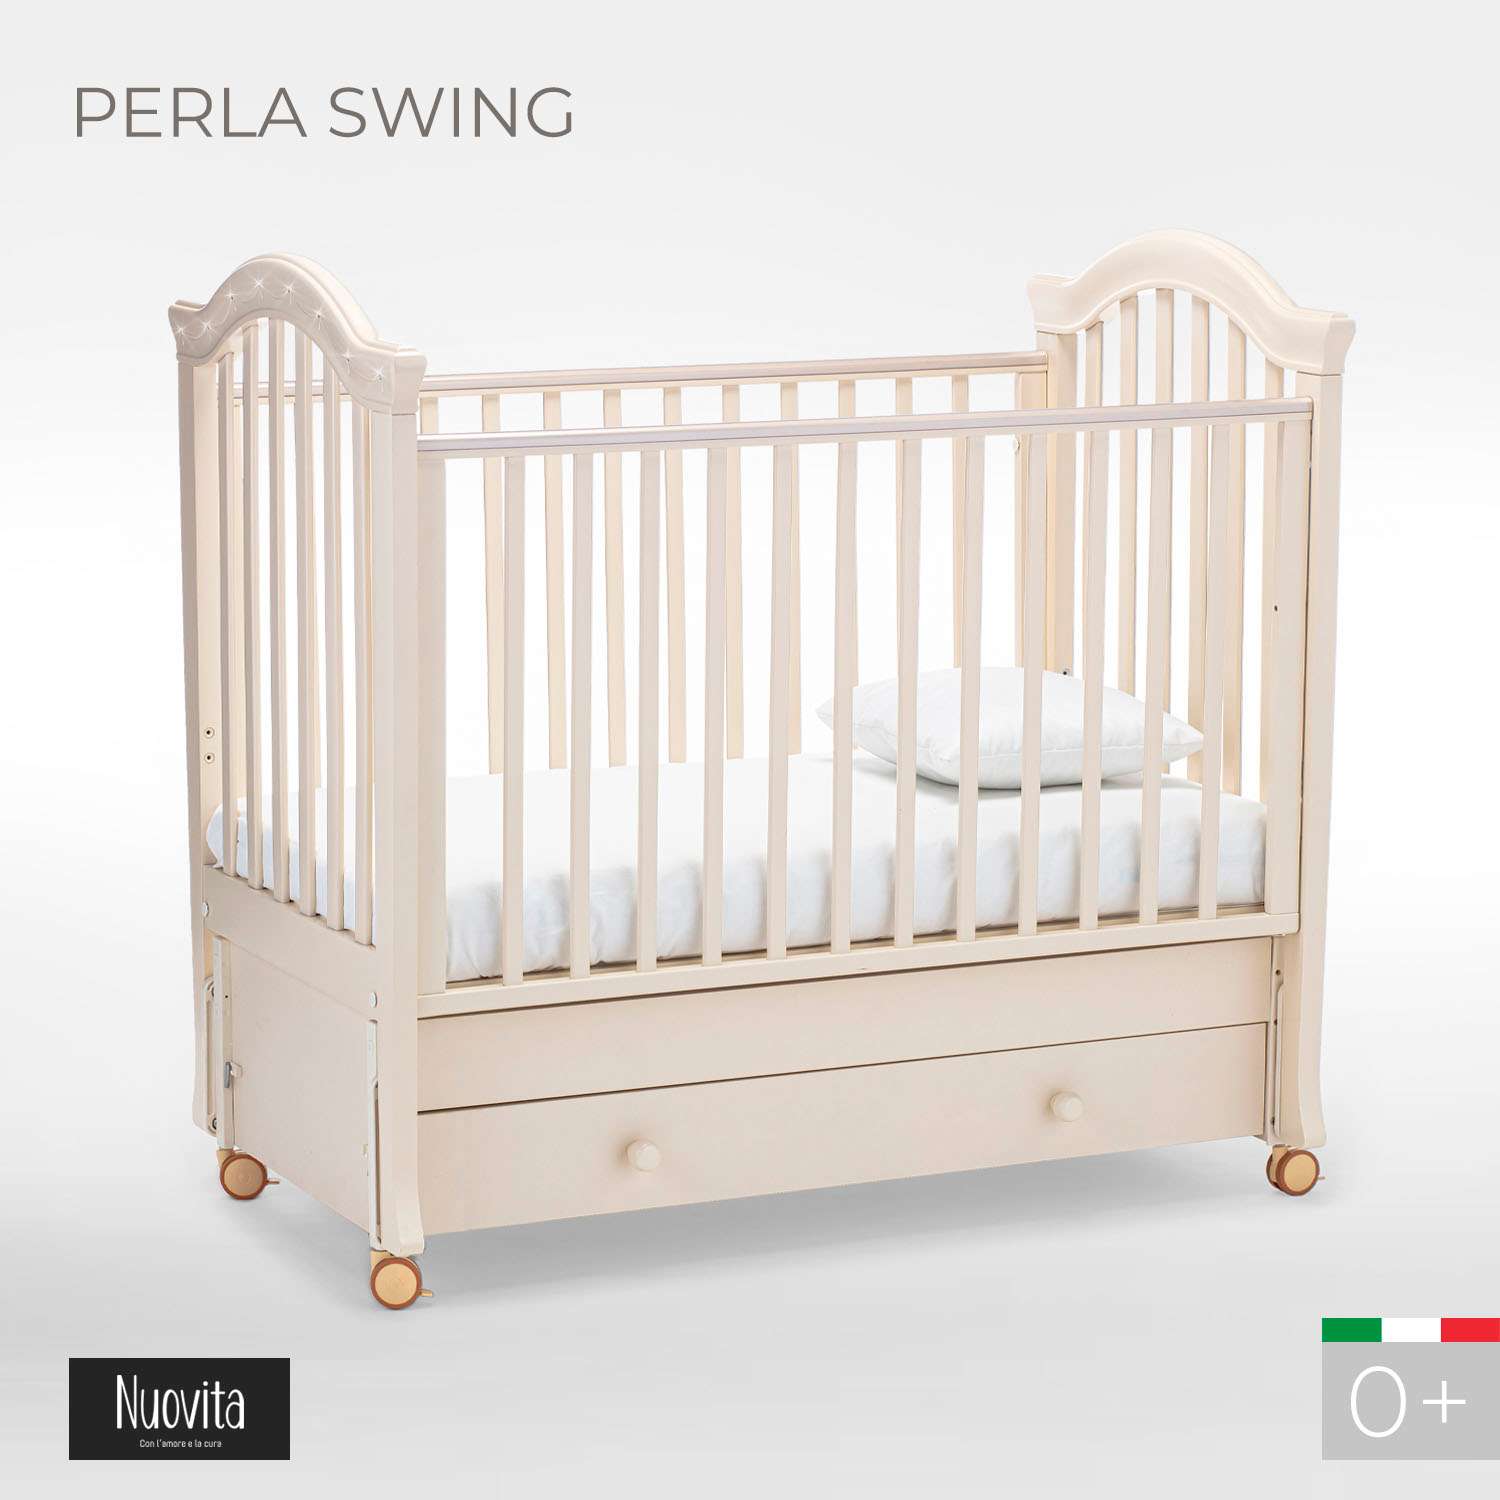 Детская кроватка Nuovita Perla Swing прямоугольная, продольный маятник (слоновая кость) - фото 2